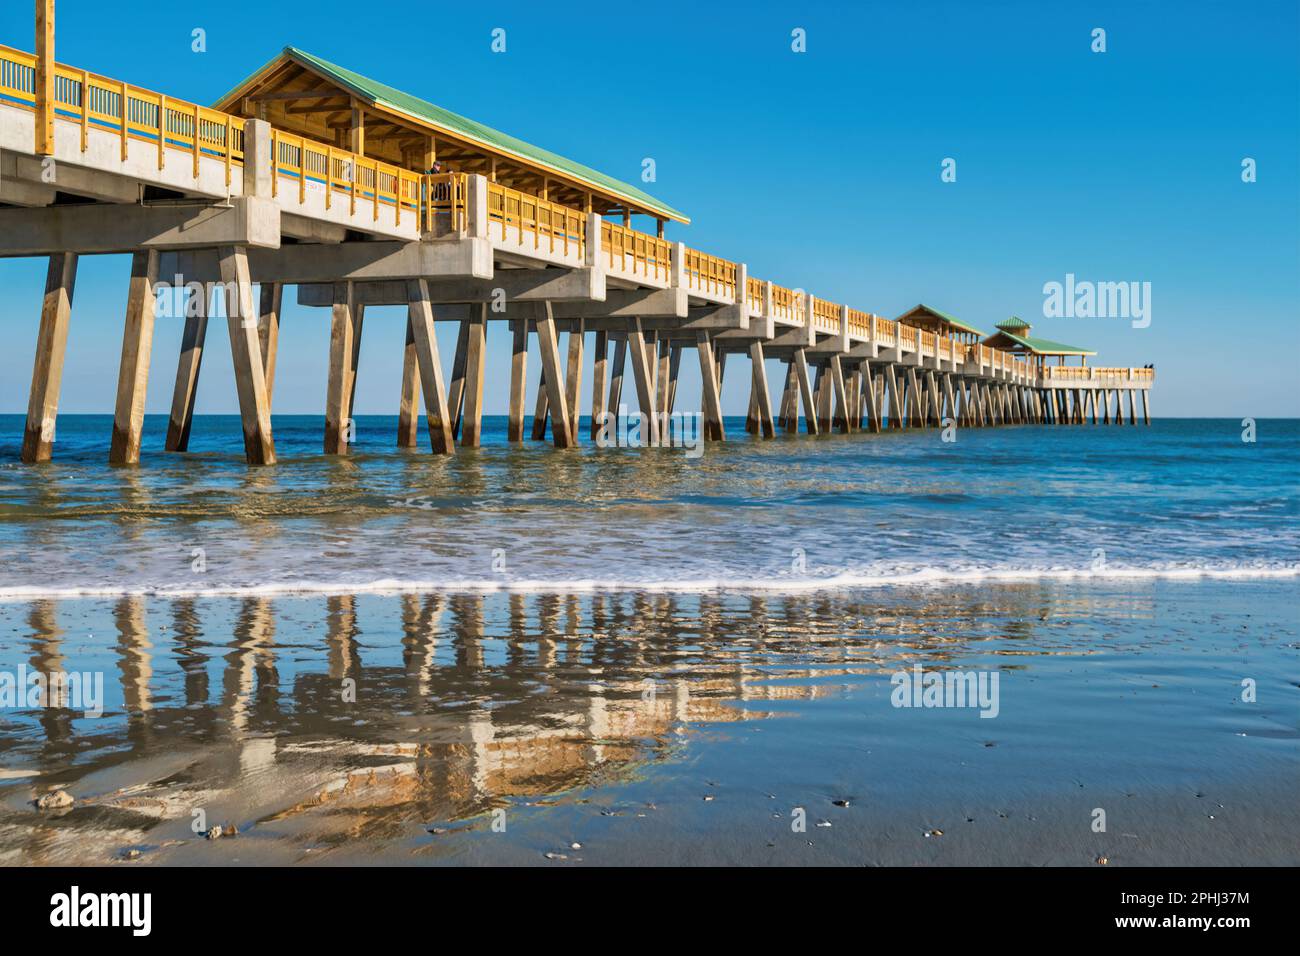 Folly Beach Pier near Charleston, South Carolina, USA. Stock Photo